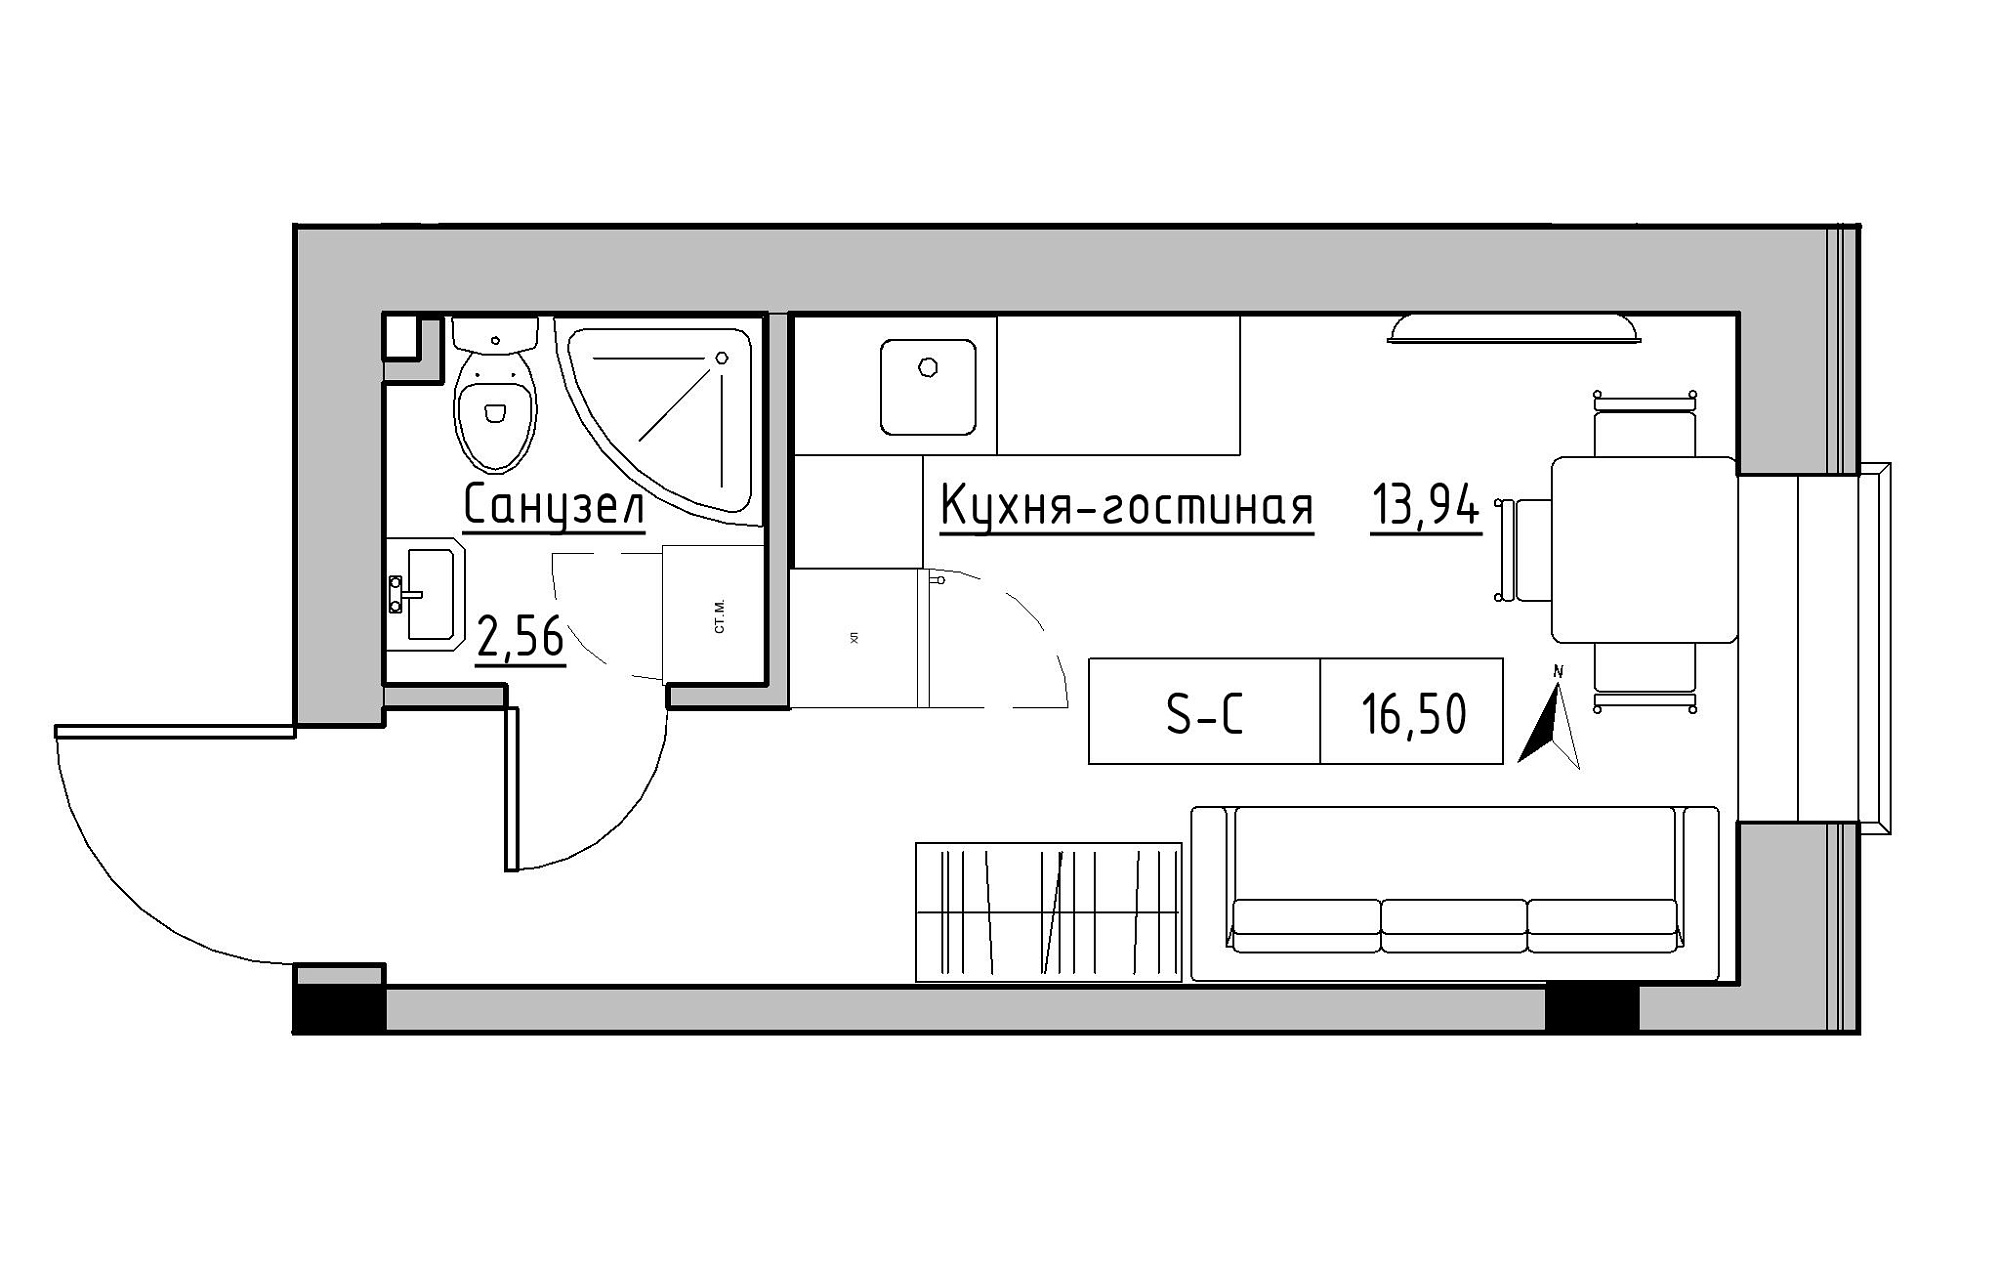 Планування Smart-квартира площею 16.5м2, KS-019-03/0005.